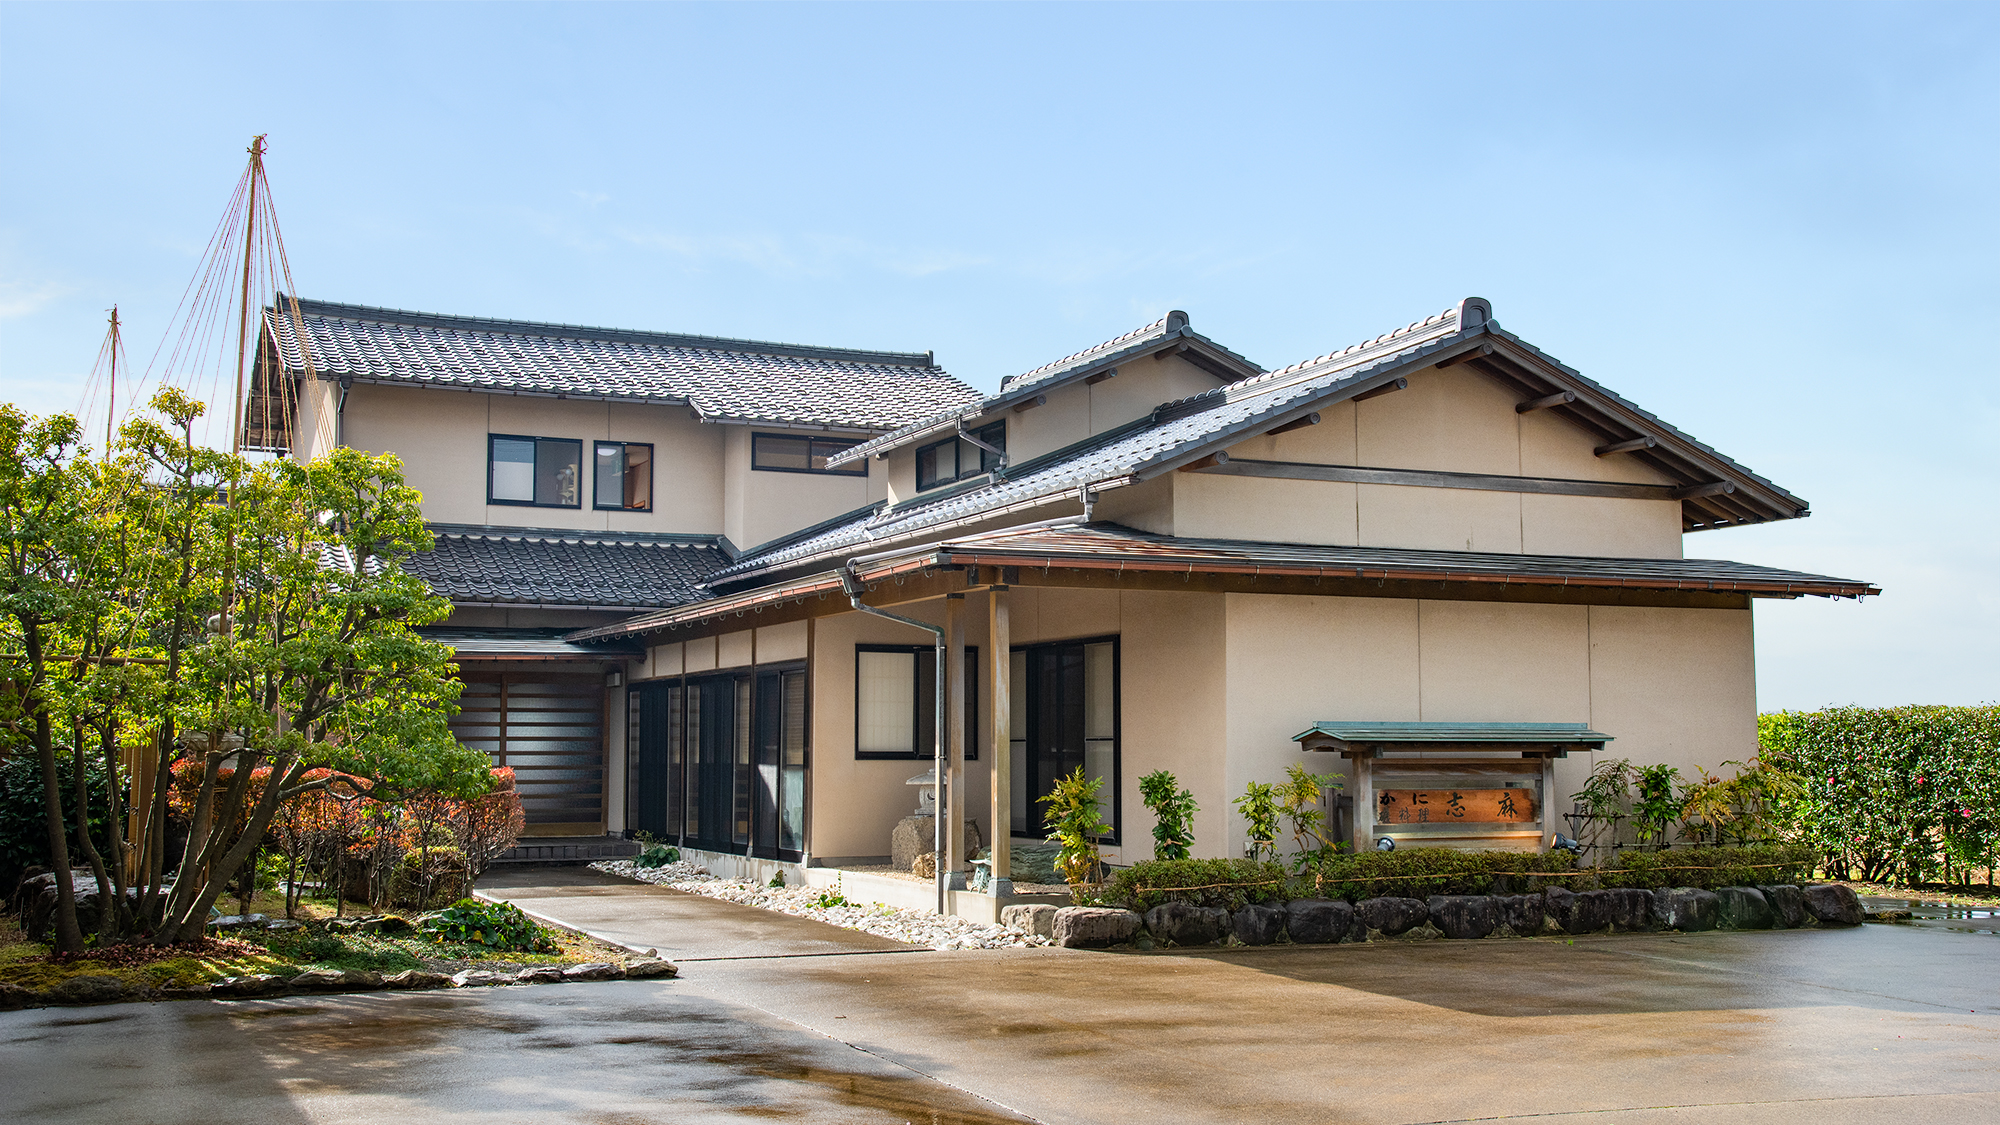 石川県 泊まってよかった コスパ重視のホテル 旅館ランキング 22